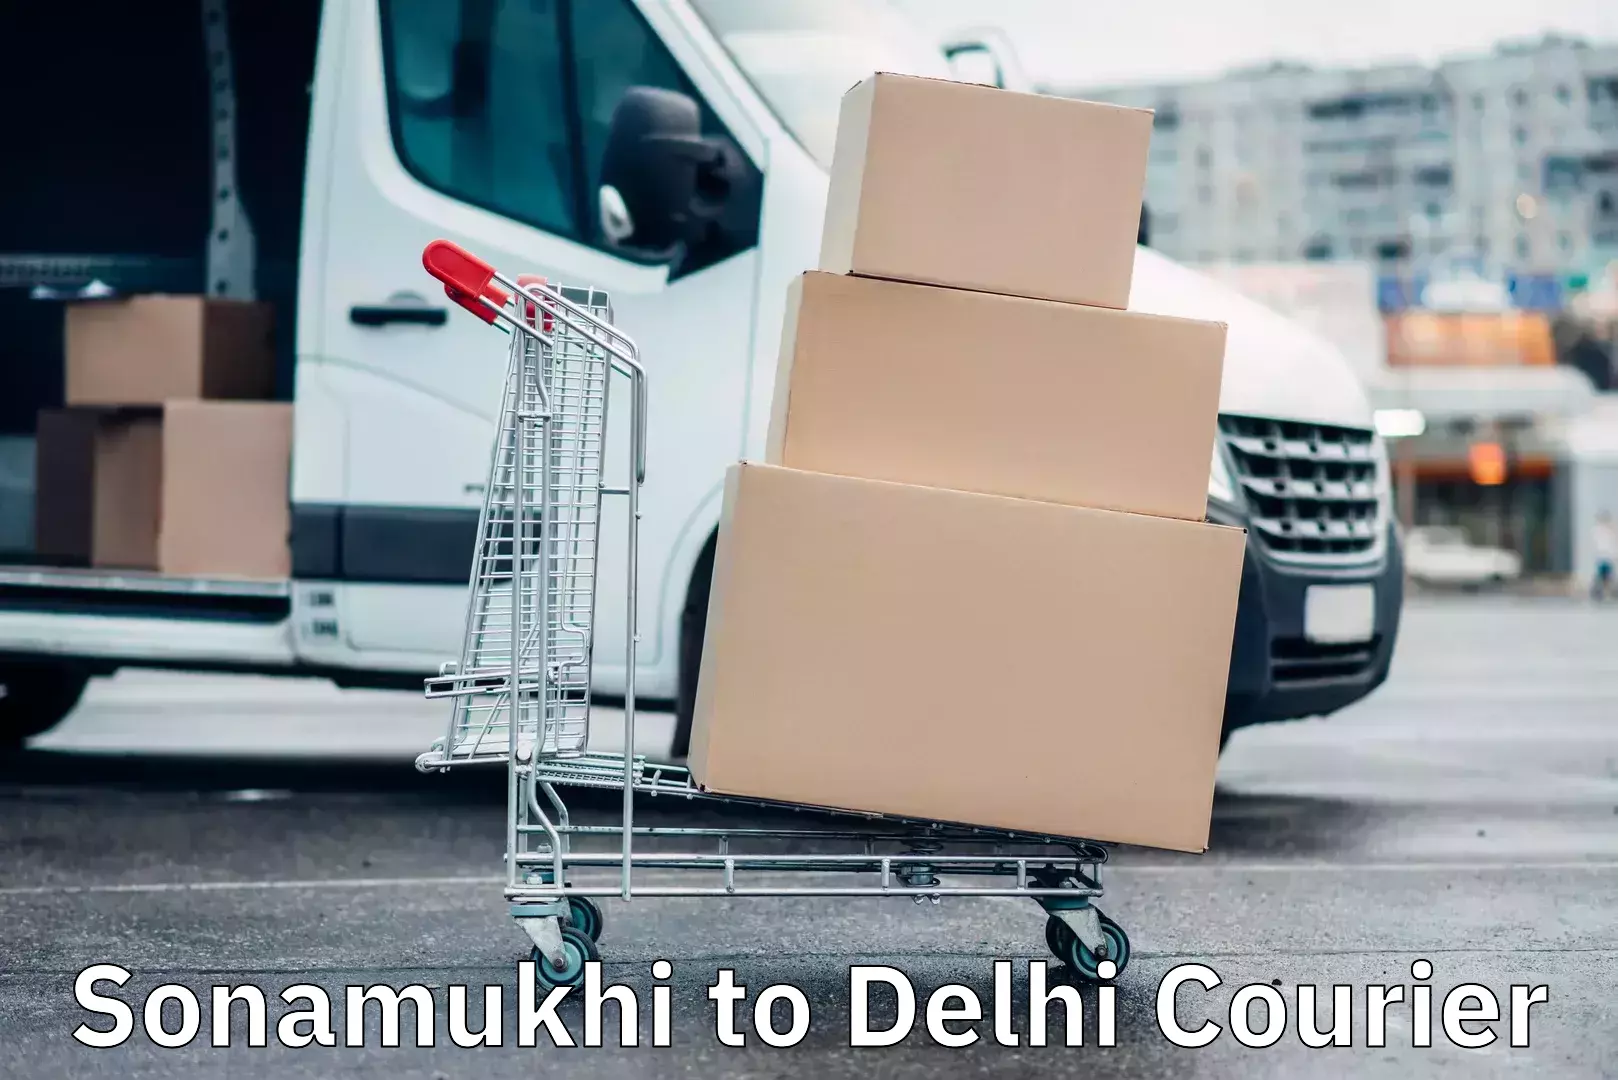 Easy return solutions in Sonamukhi to Delhi